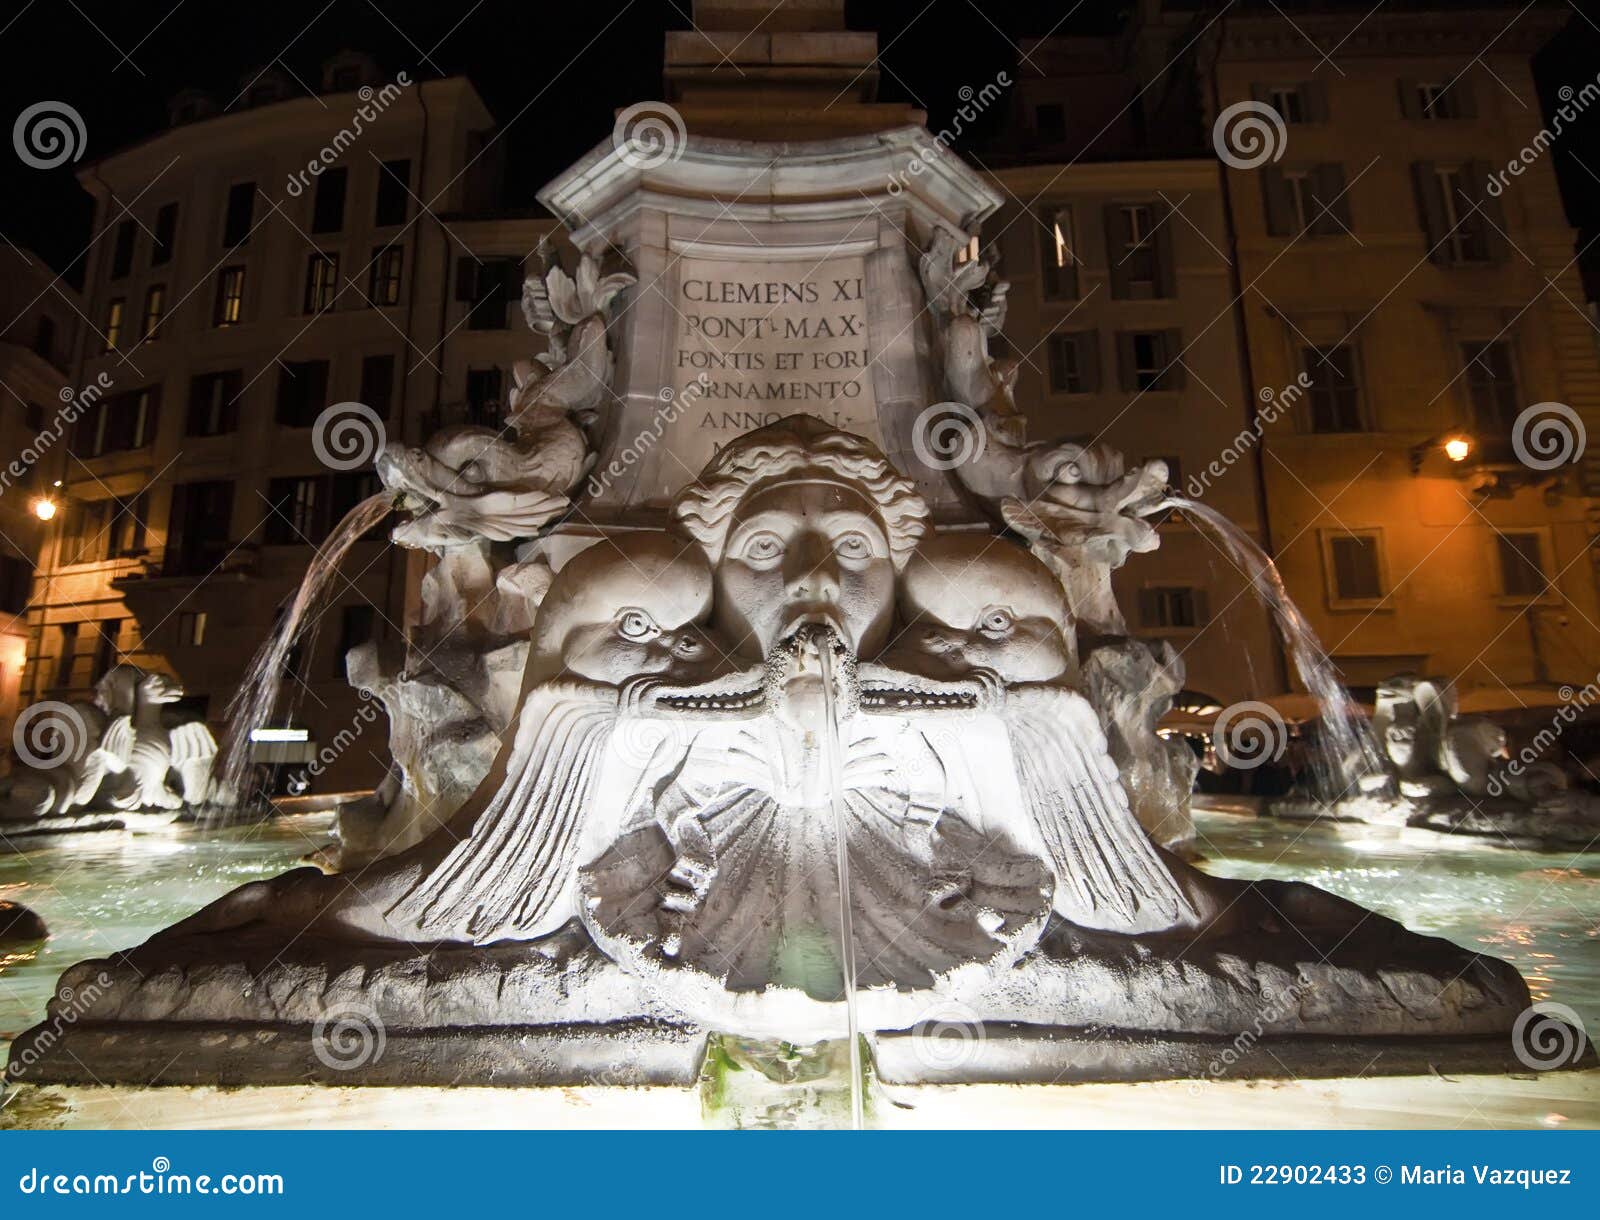 fountain at rotonda square in rome